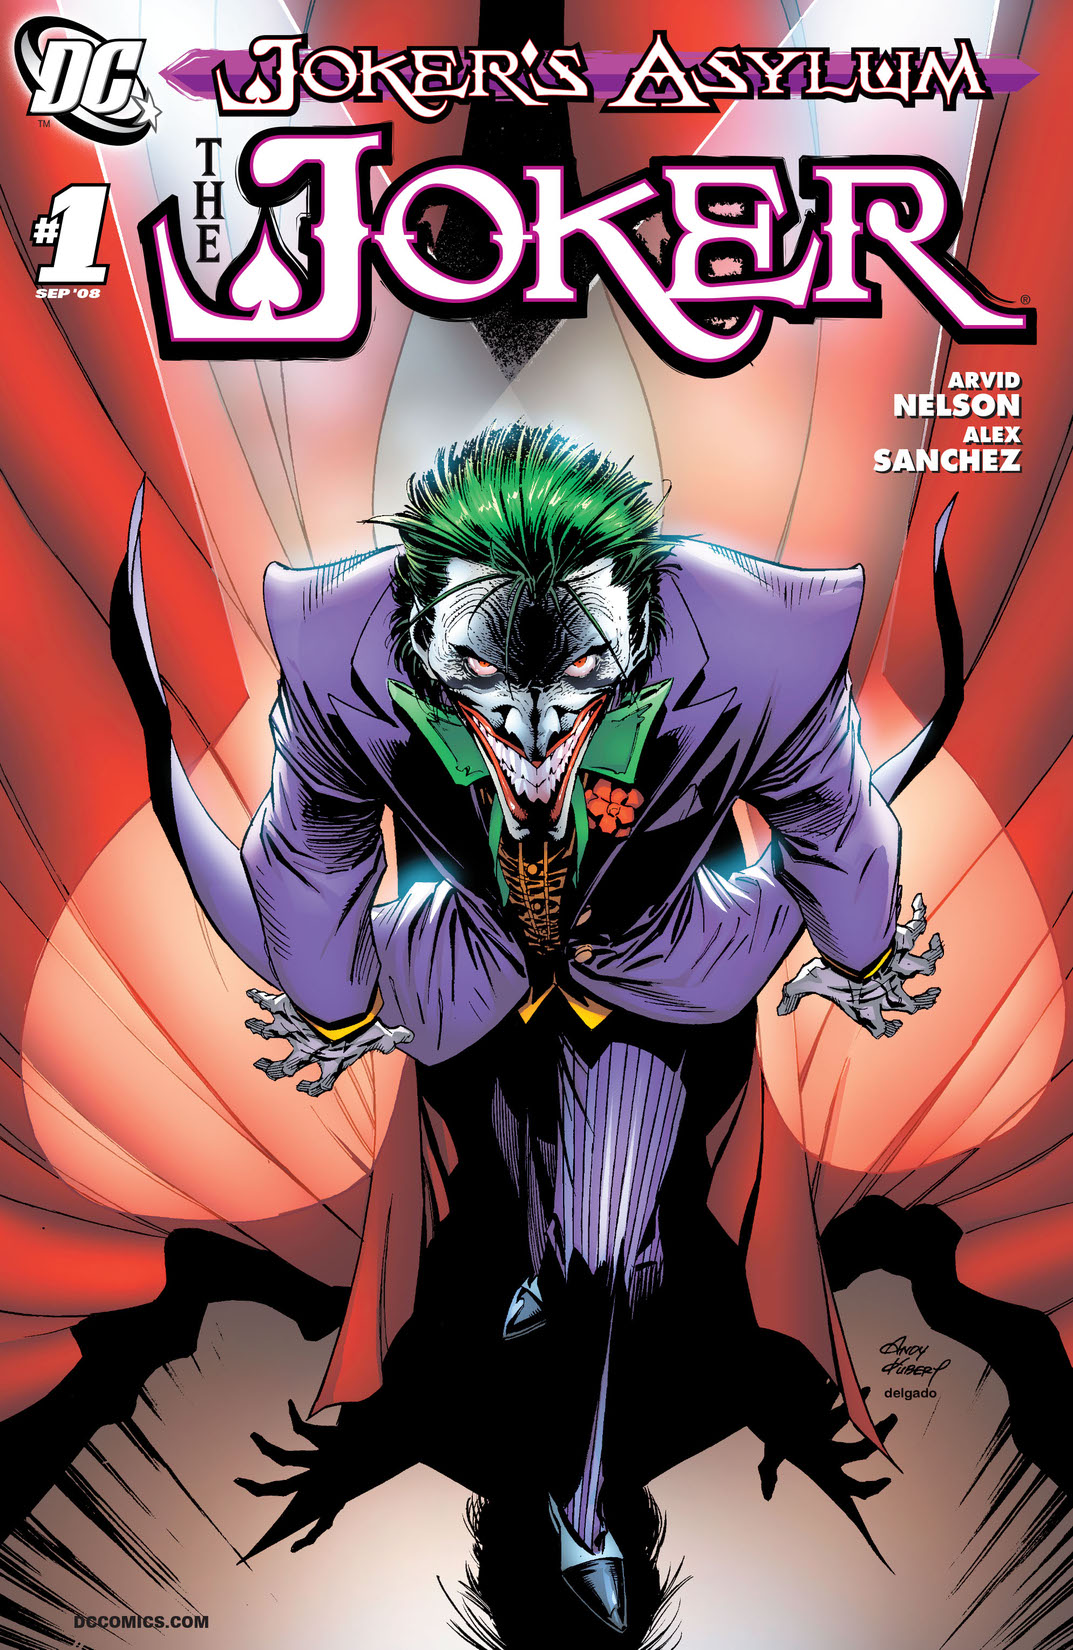 Joker's Asylum: Joker #1 preview images